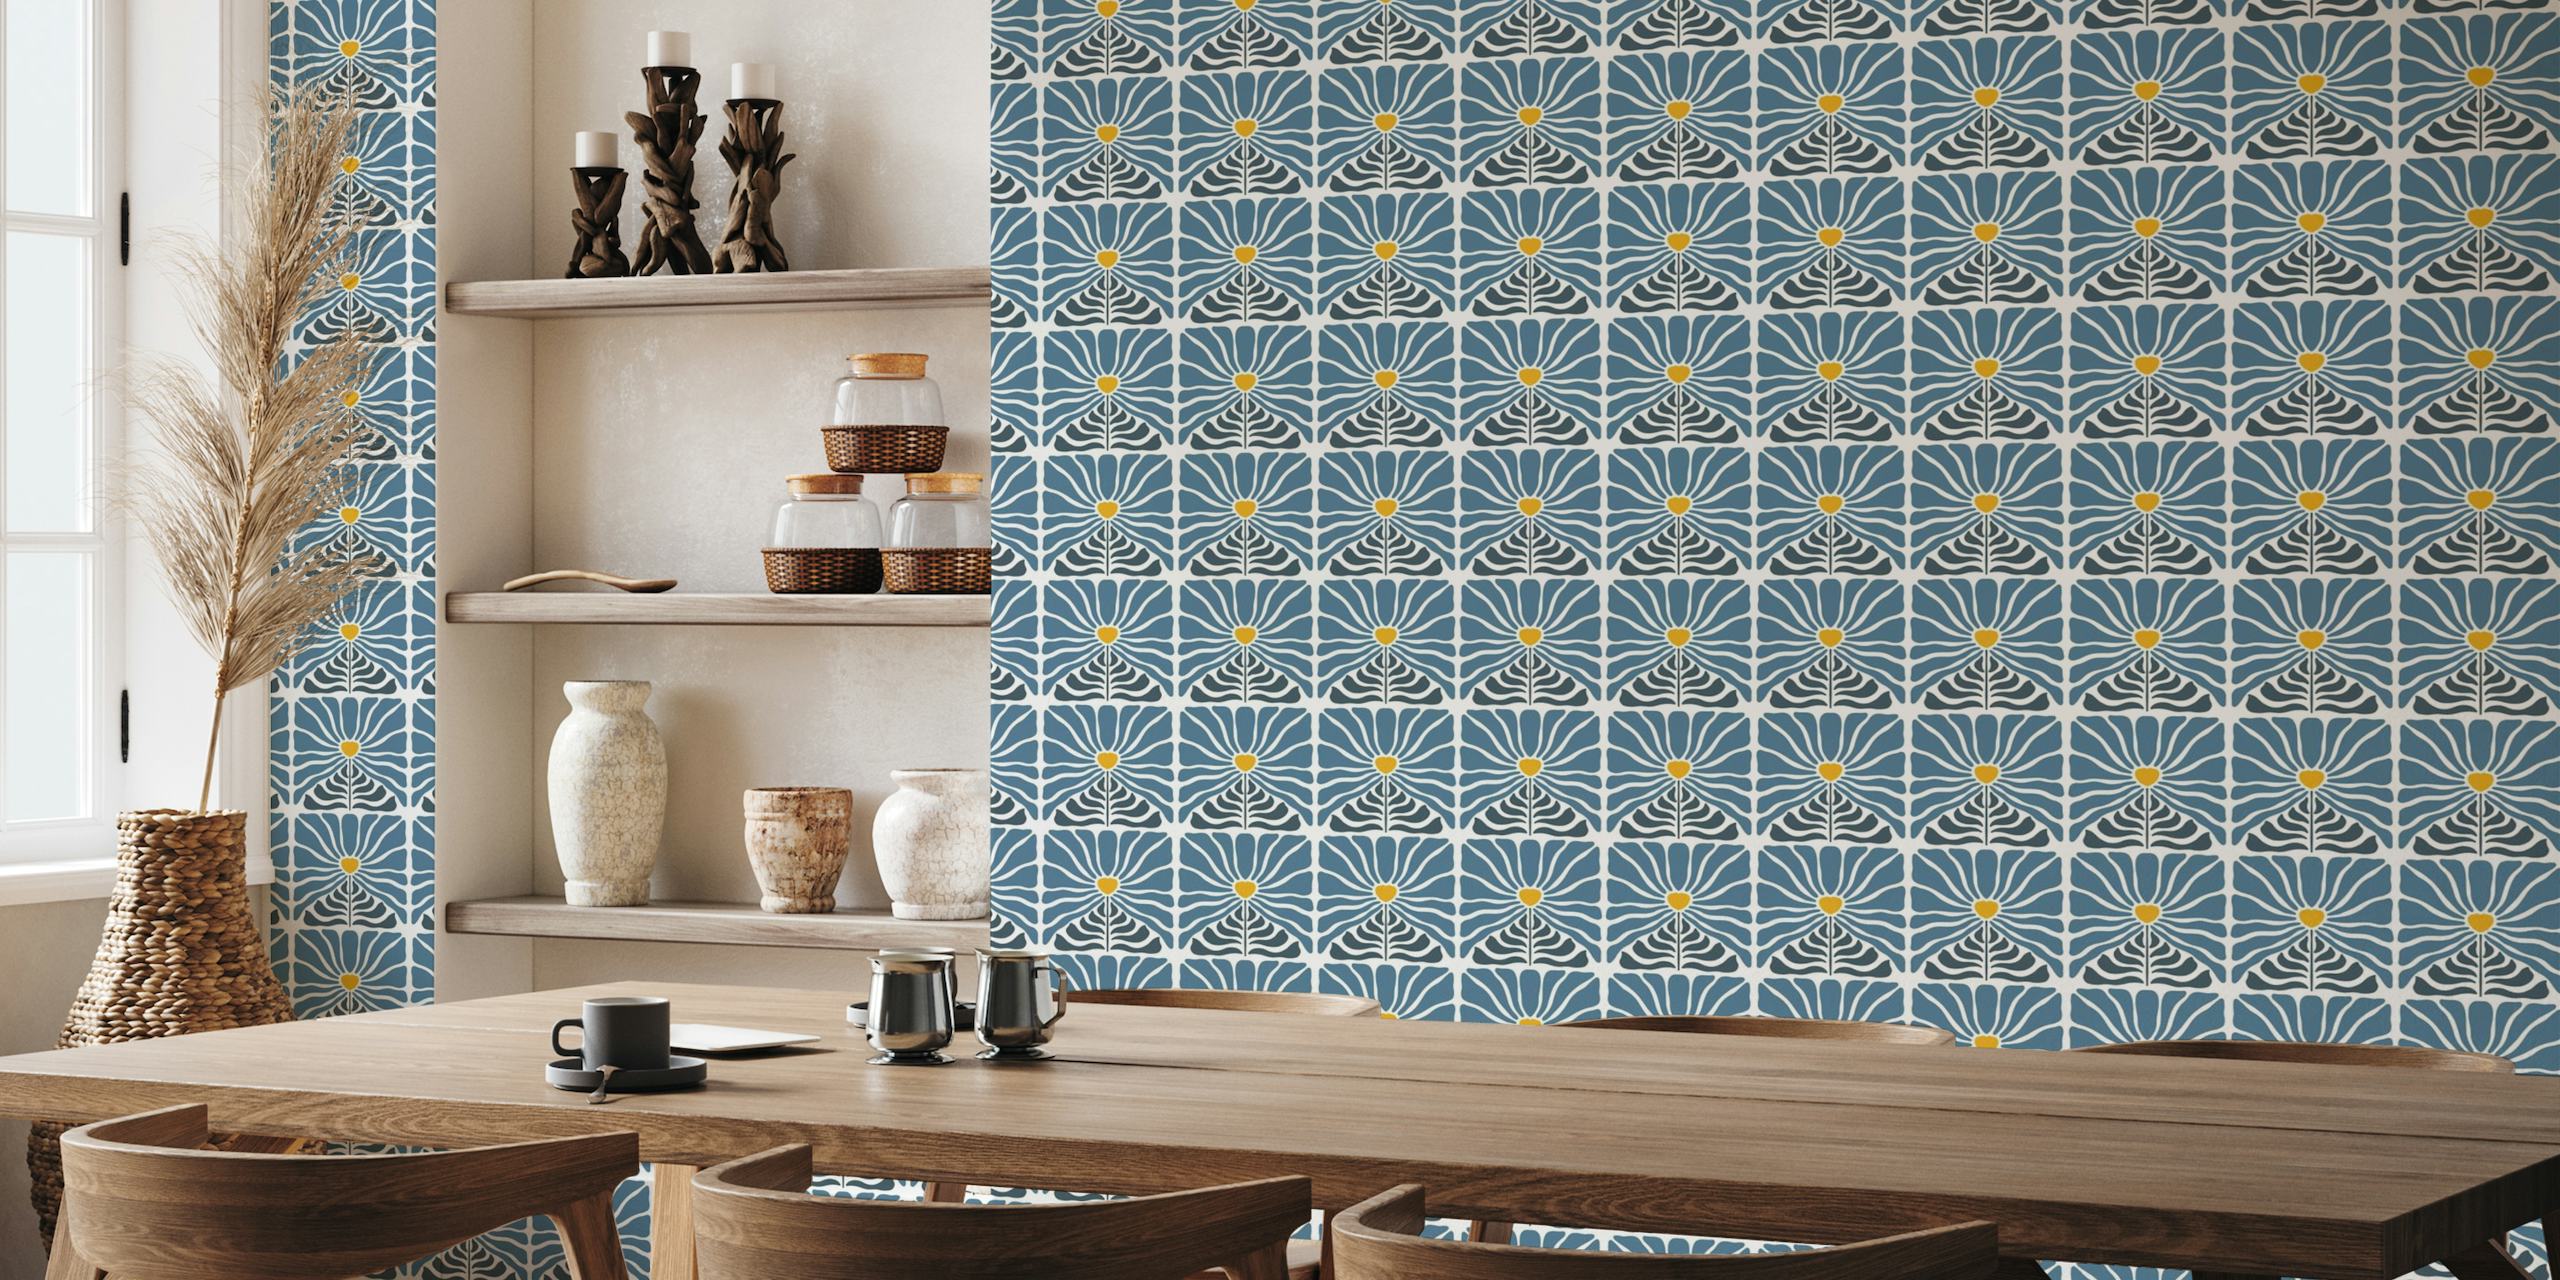 Vintage-inspiriertes Wandbild mit blauen Blumen mit gelben Mittelpunkten auf einem Hintergrund mit Retro-Muster